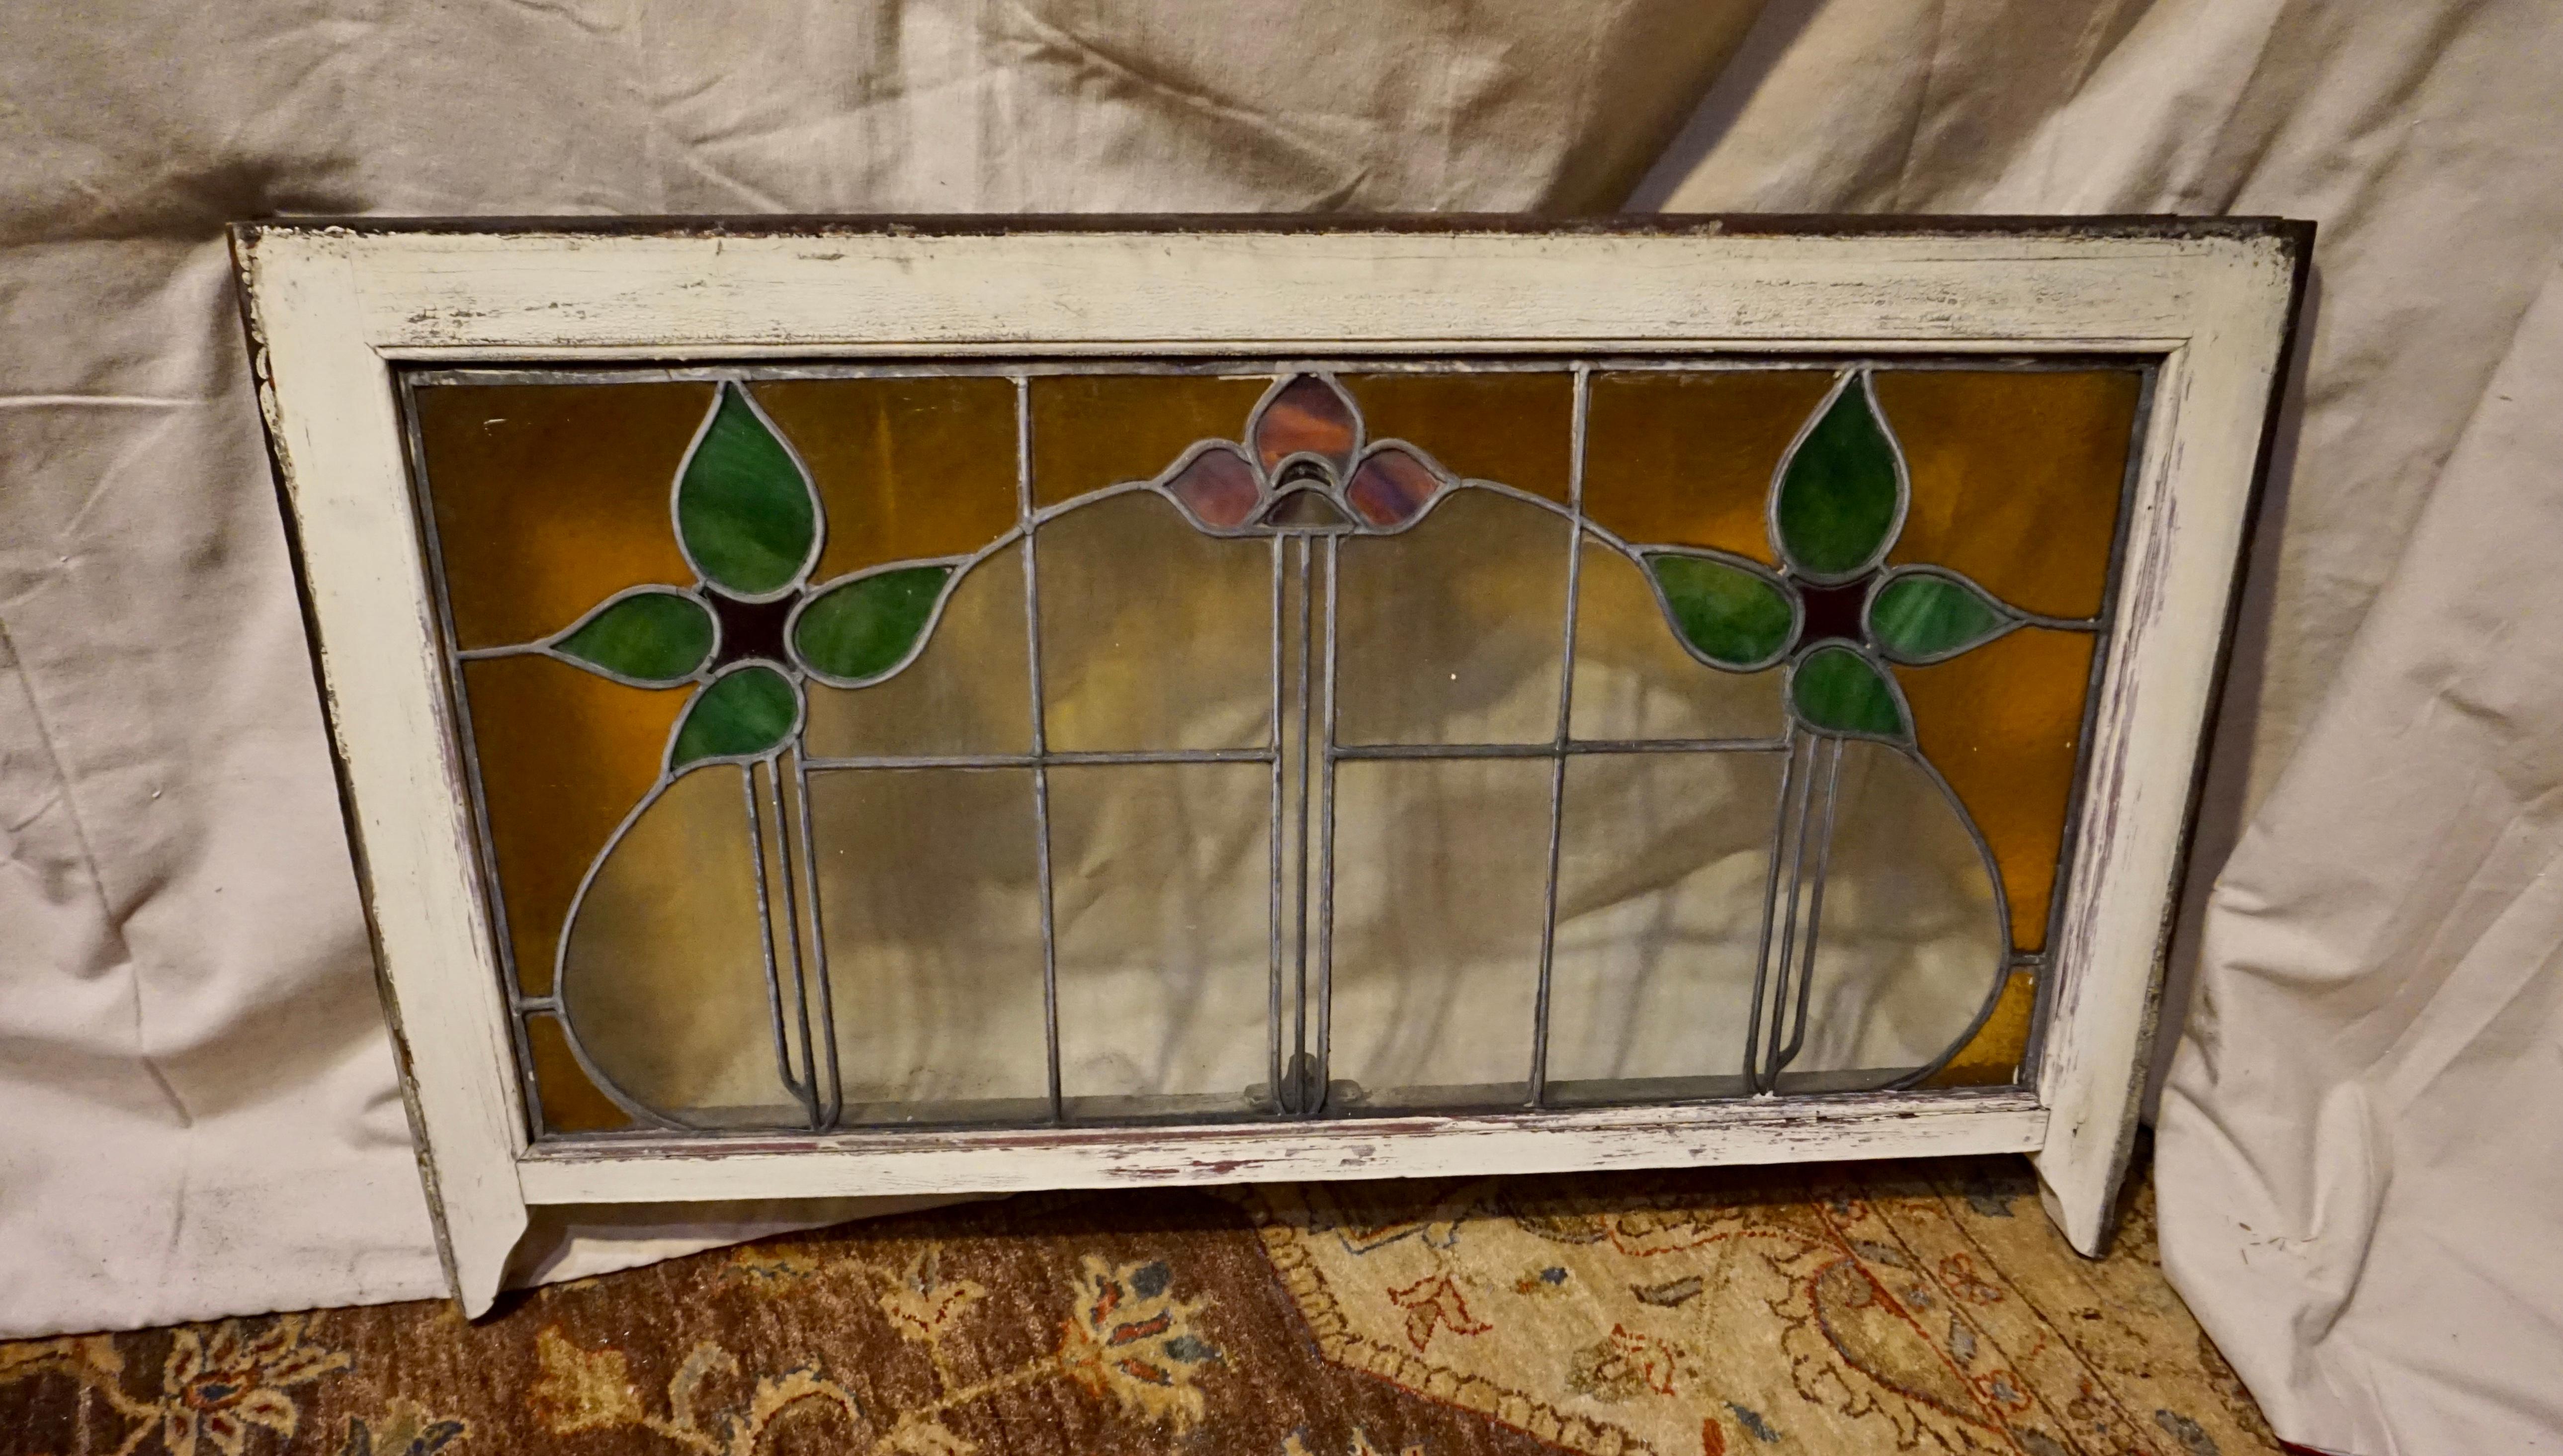 Arts & Crafts Großes Buntglasfenster um 1900-10. Schöne Bogenform, die durch warme Blumenmotive hervorgehoben wird. Guter Originalzustand. Dieses Design ist selten zu finden und wird in der richtigen Umgebung großartig sein. 